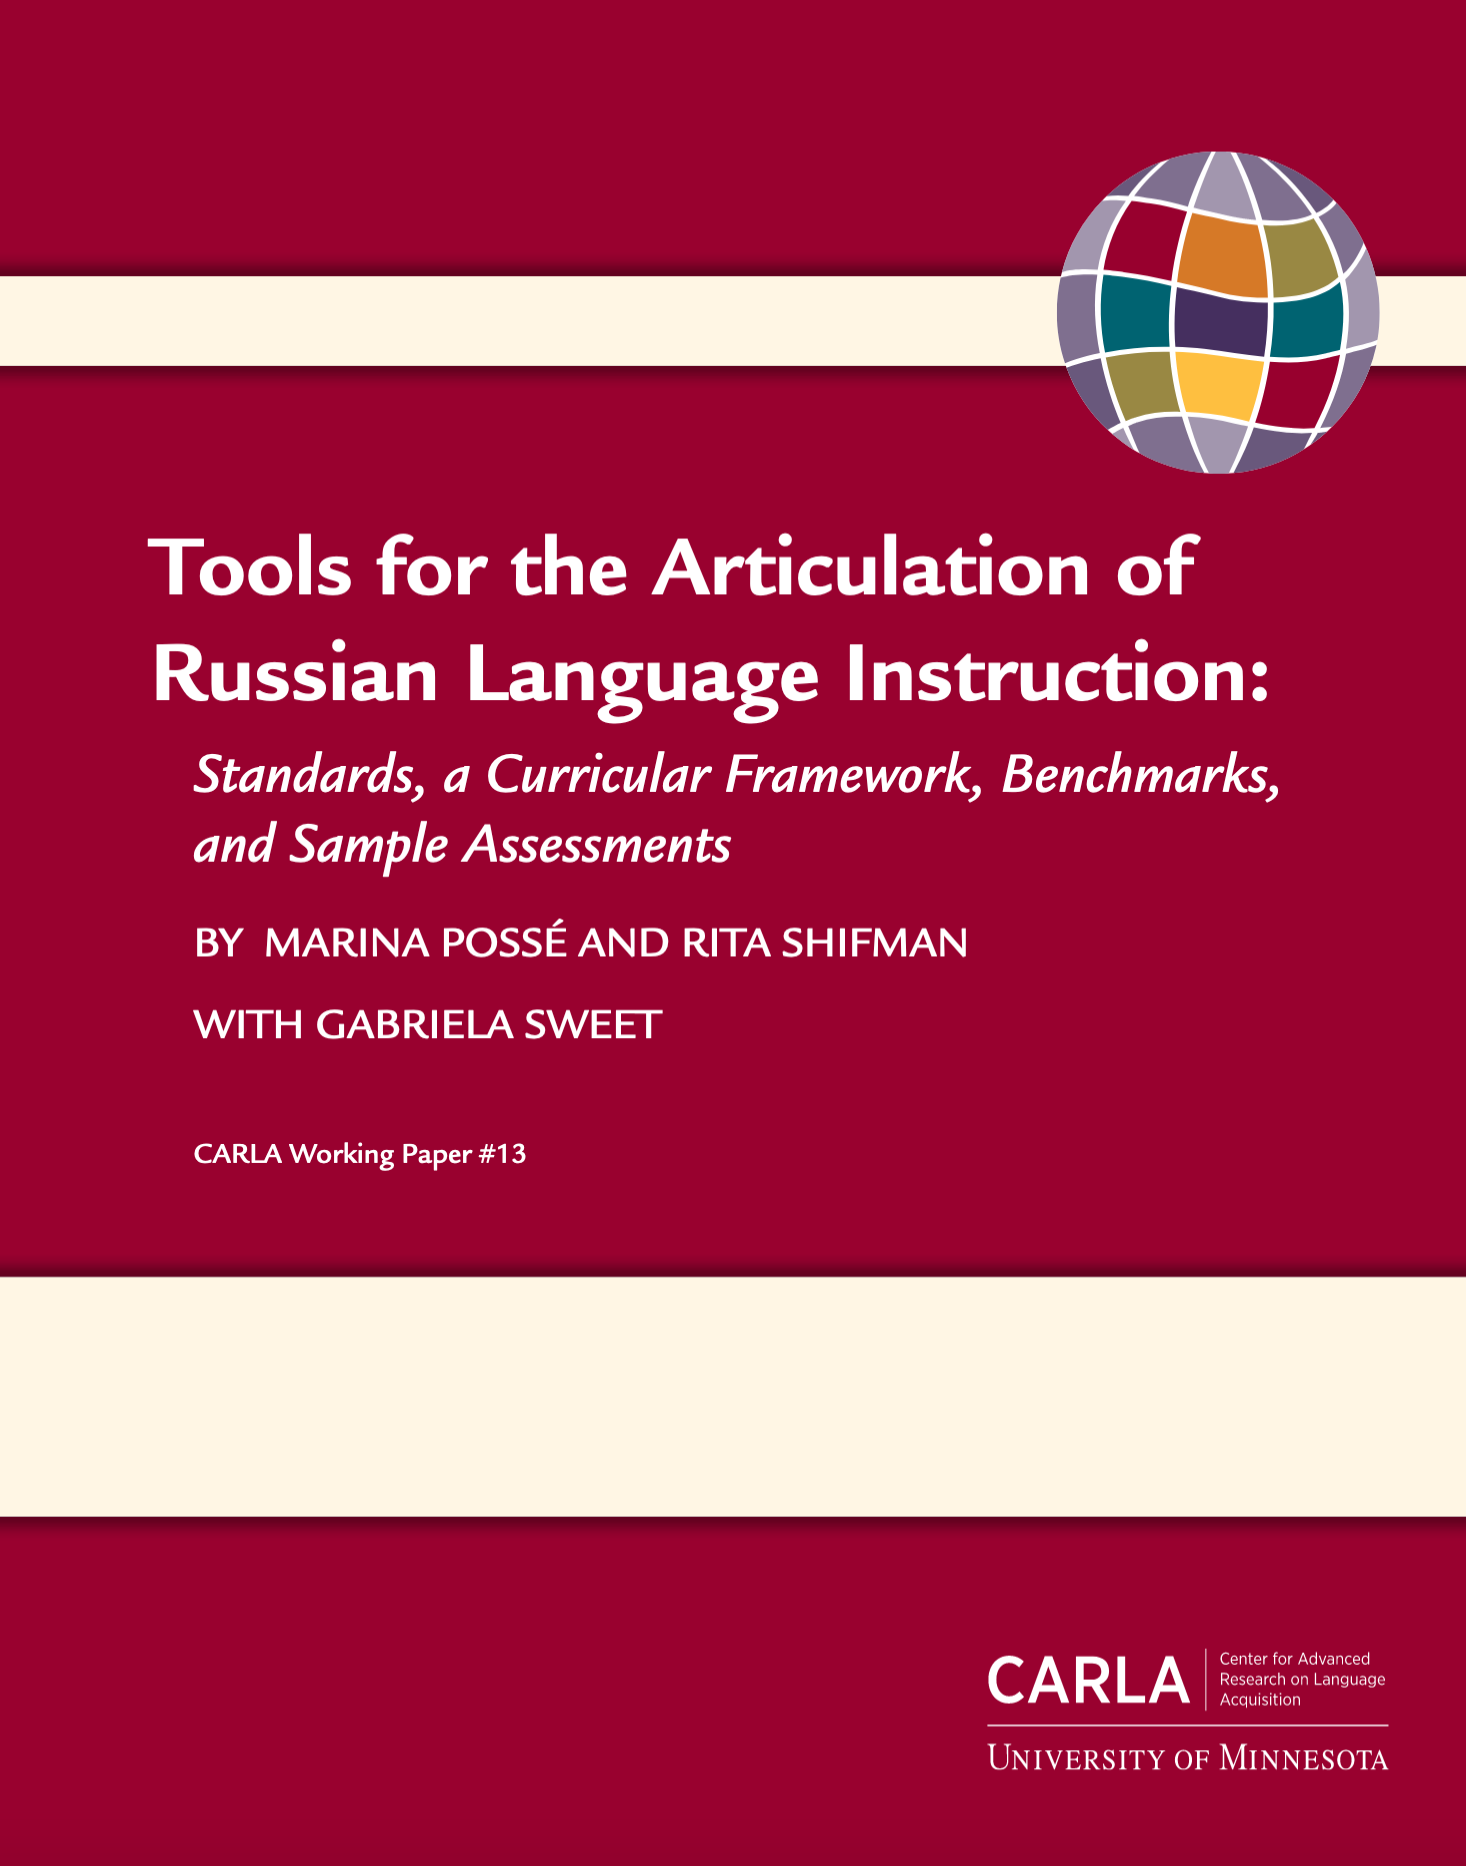 俄语发音教学工具